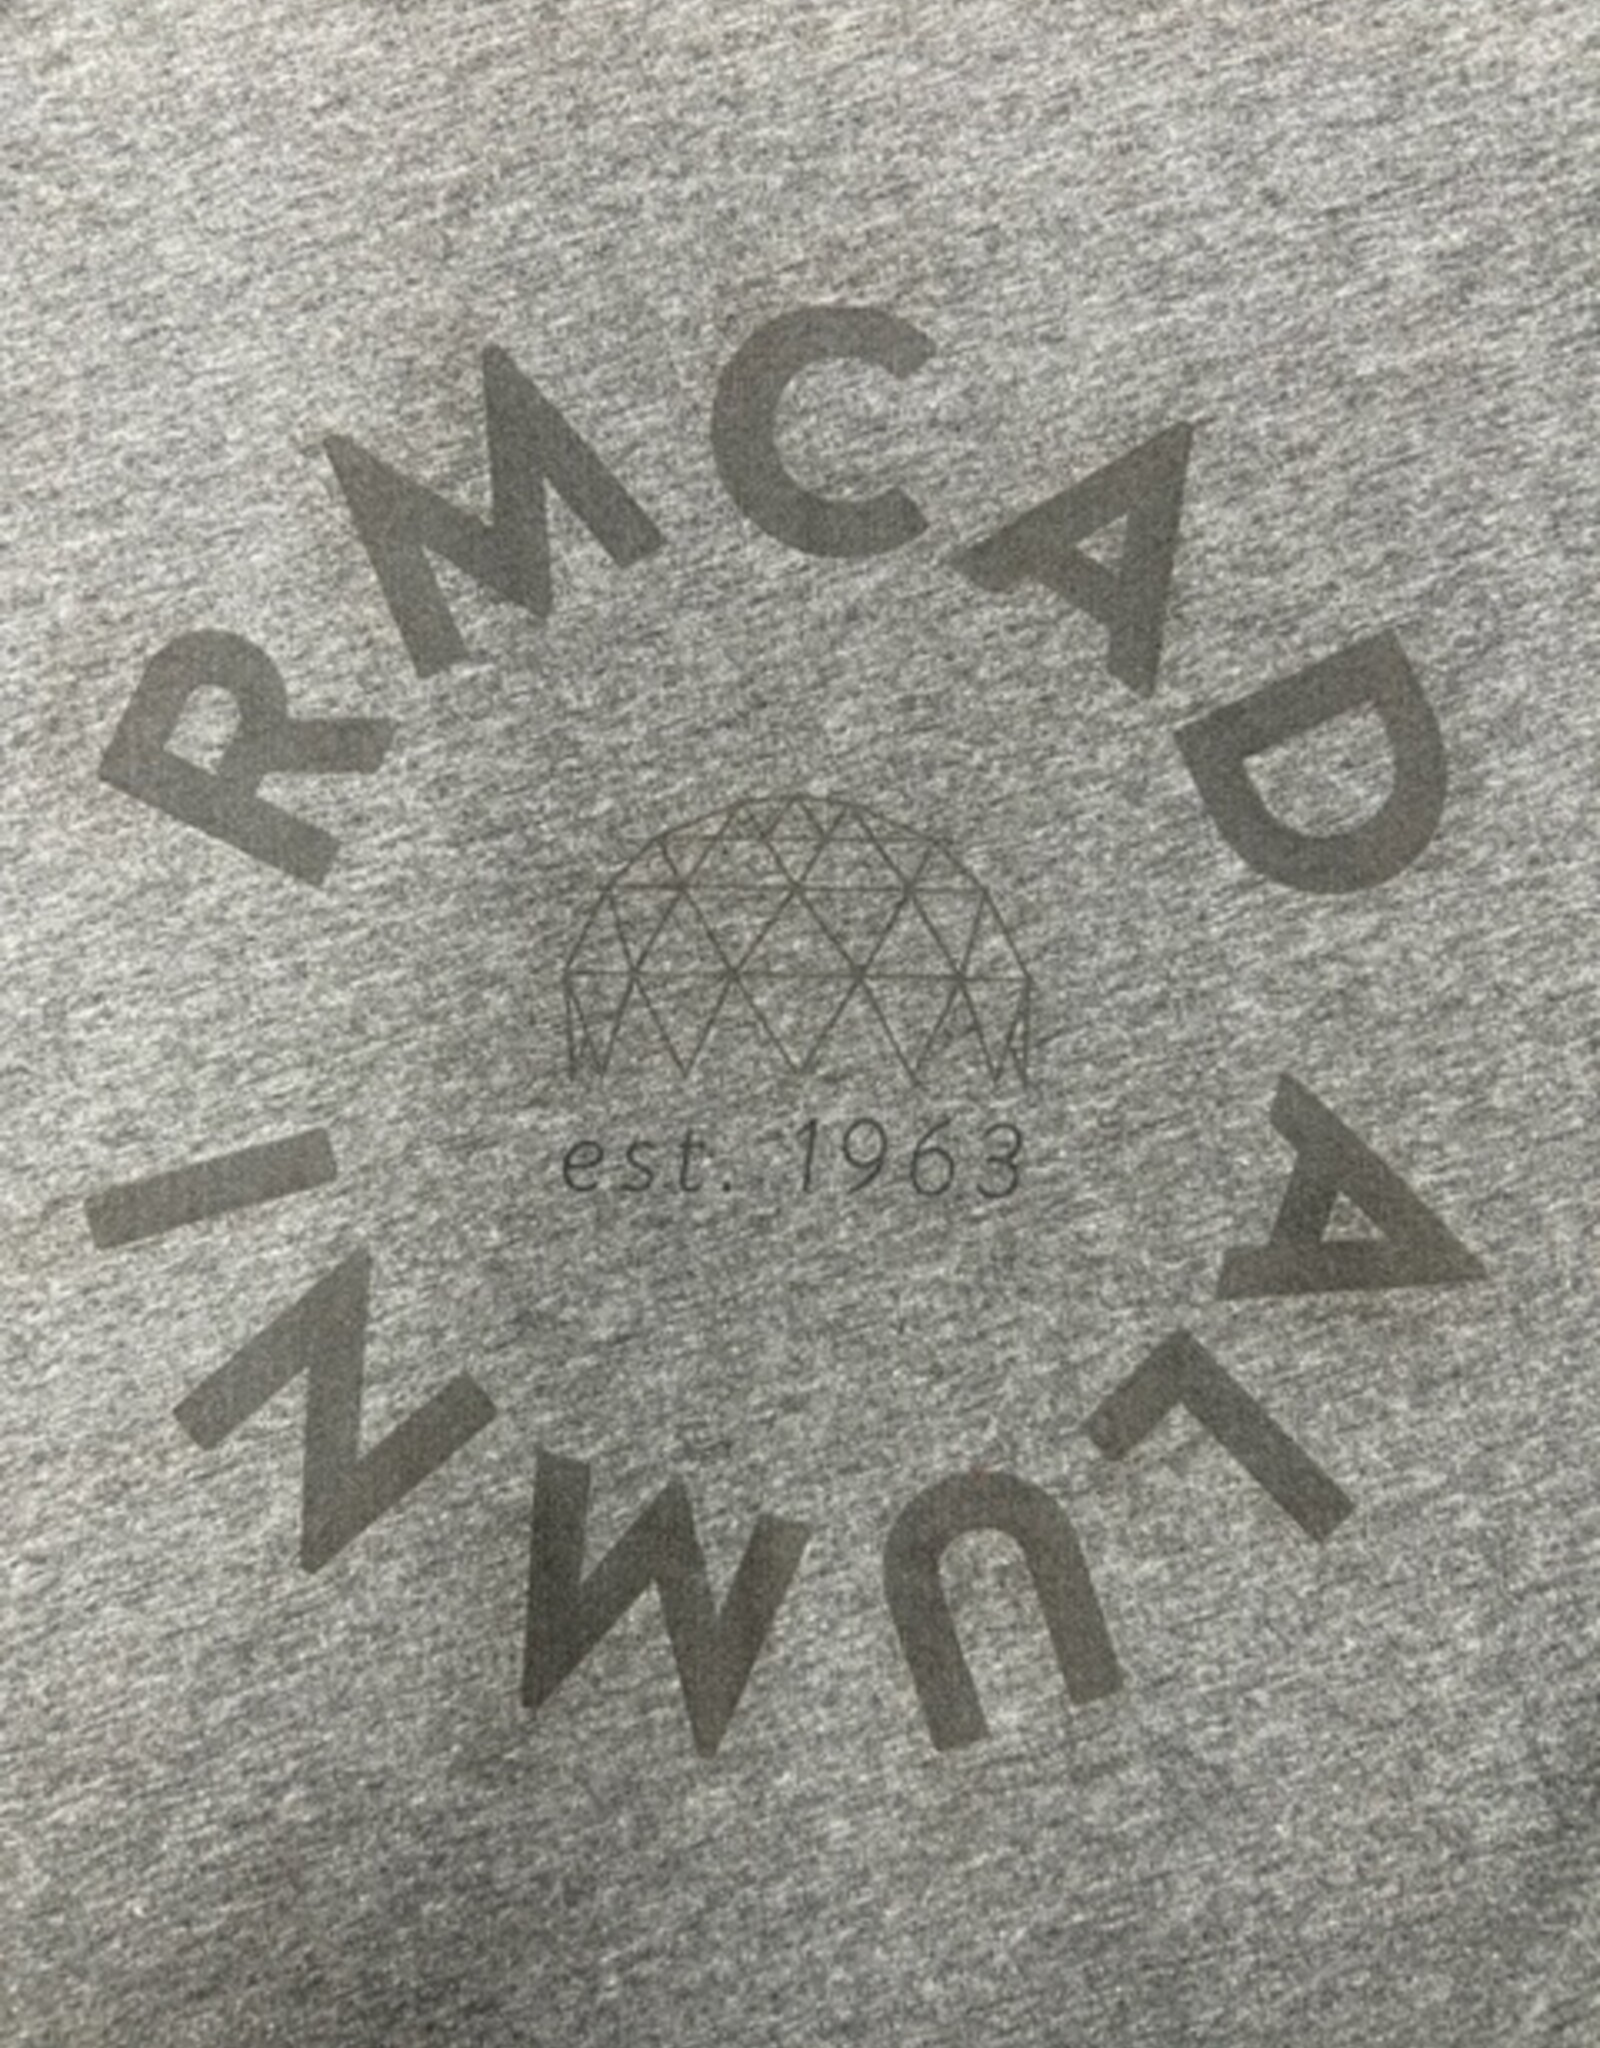 RMCAD Alumni Grey Circle Tee